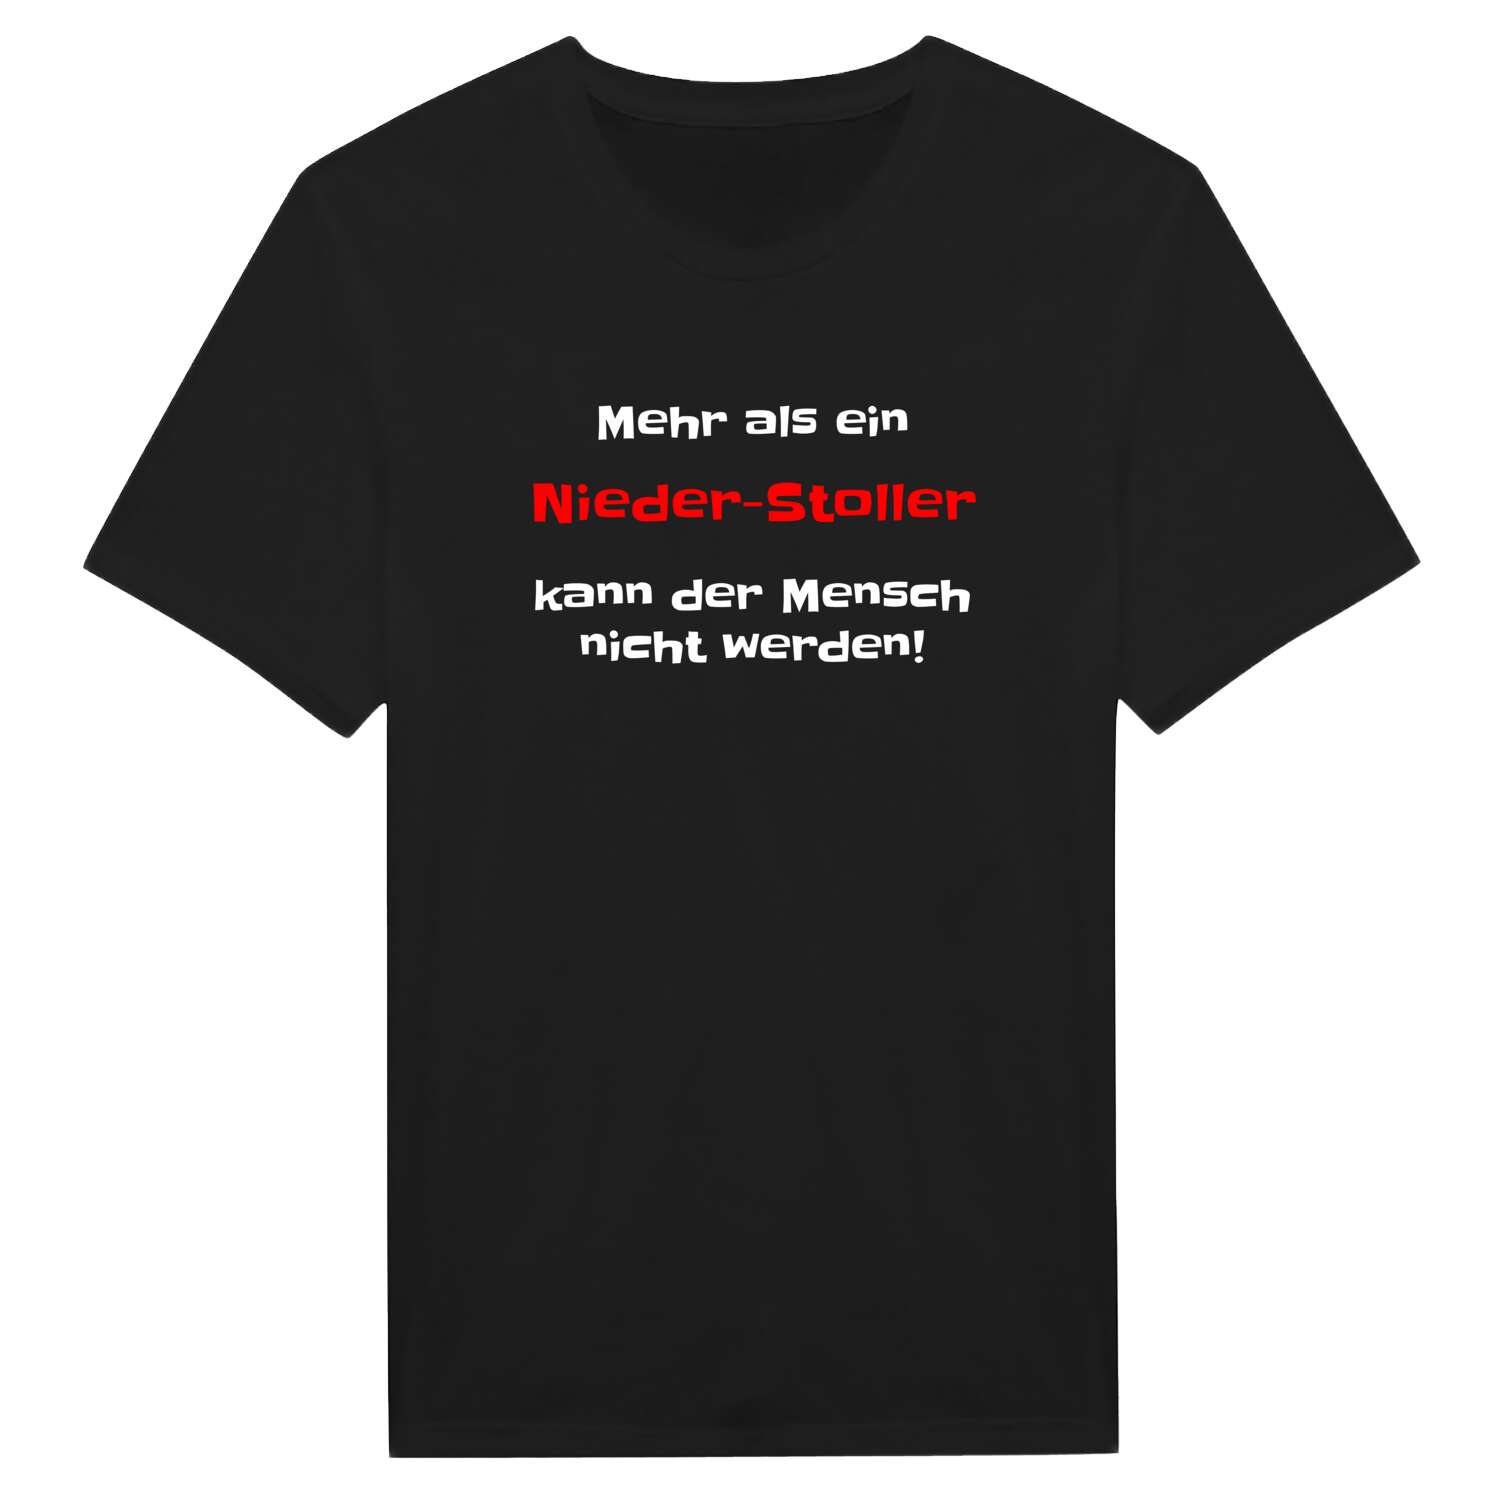 Nieder-Stoll T-Shirt »Mehr als ein«